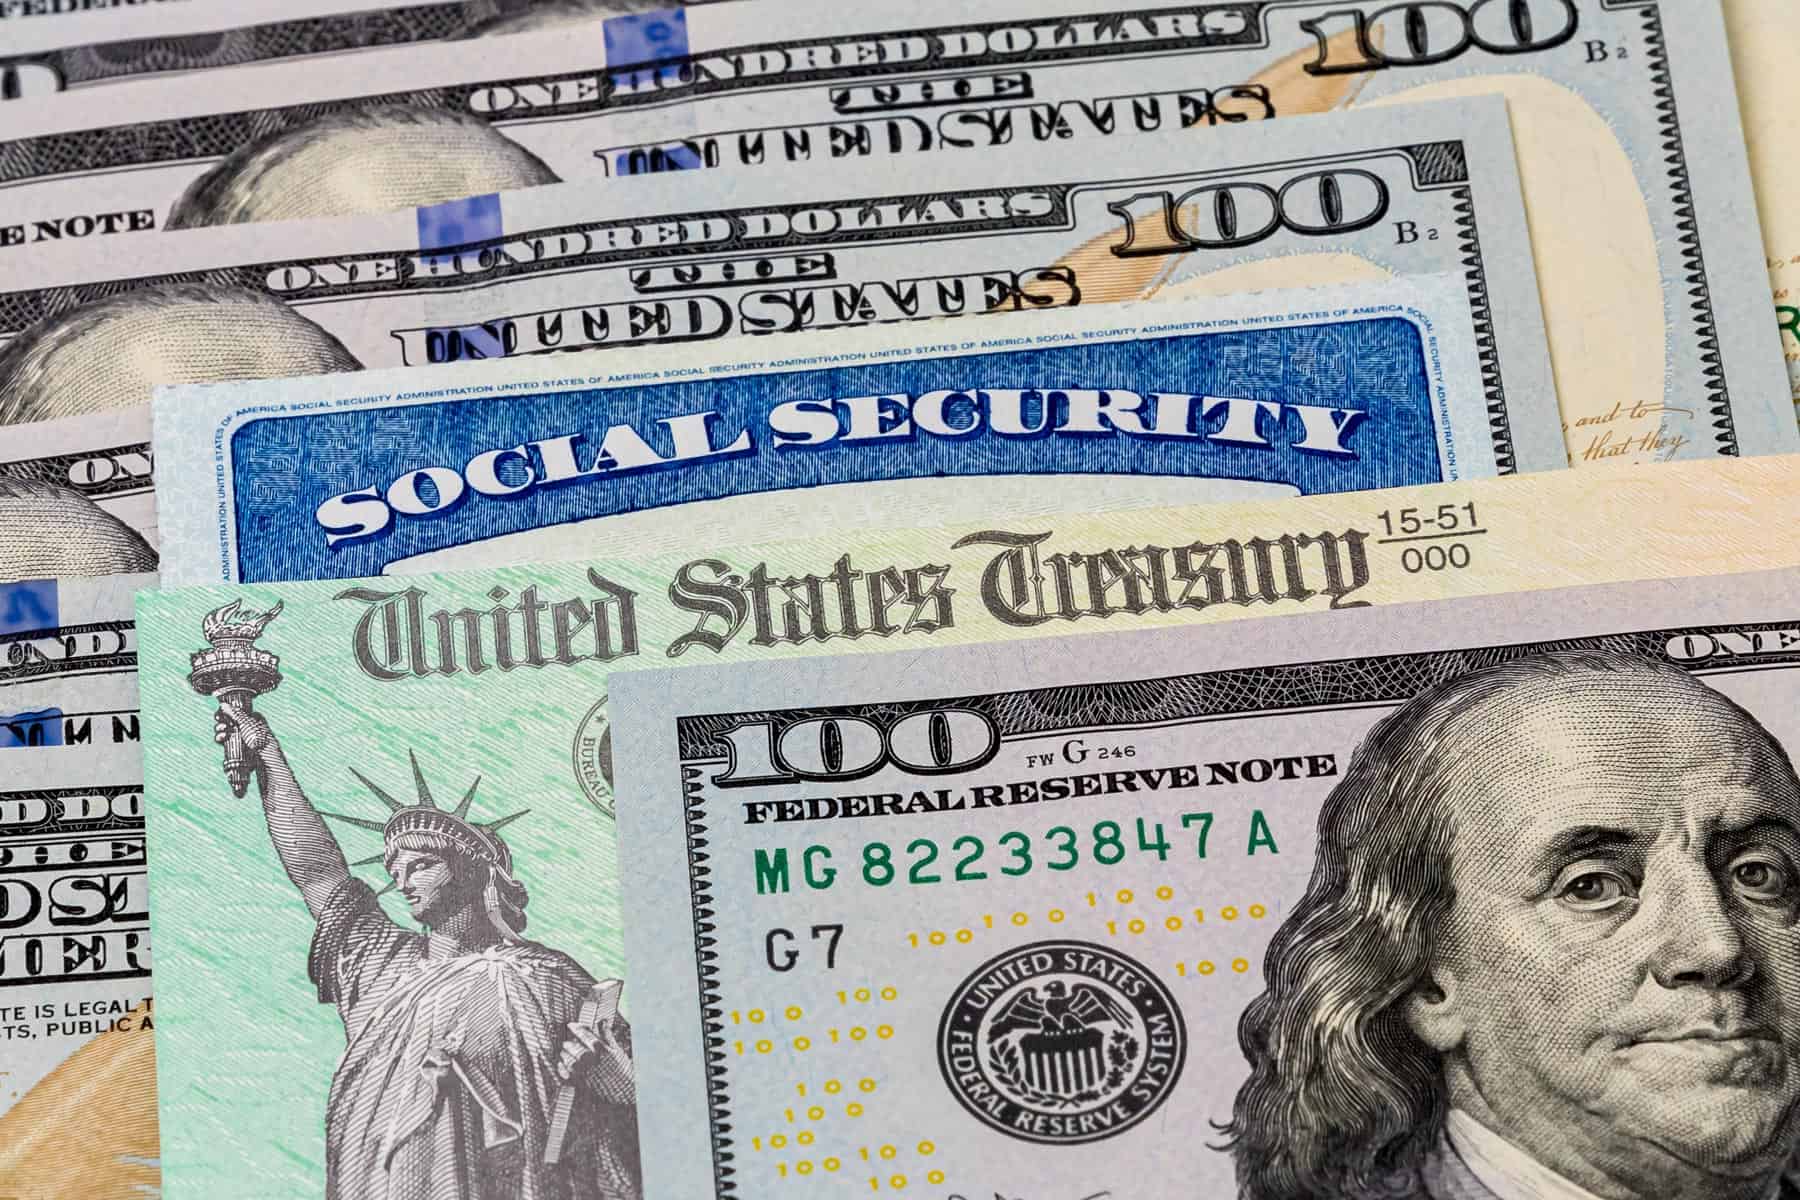 cheques hasta 1750 dolares en 10 estados de estados unidos